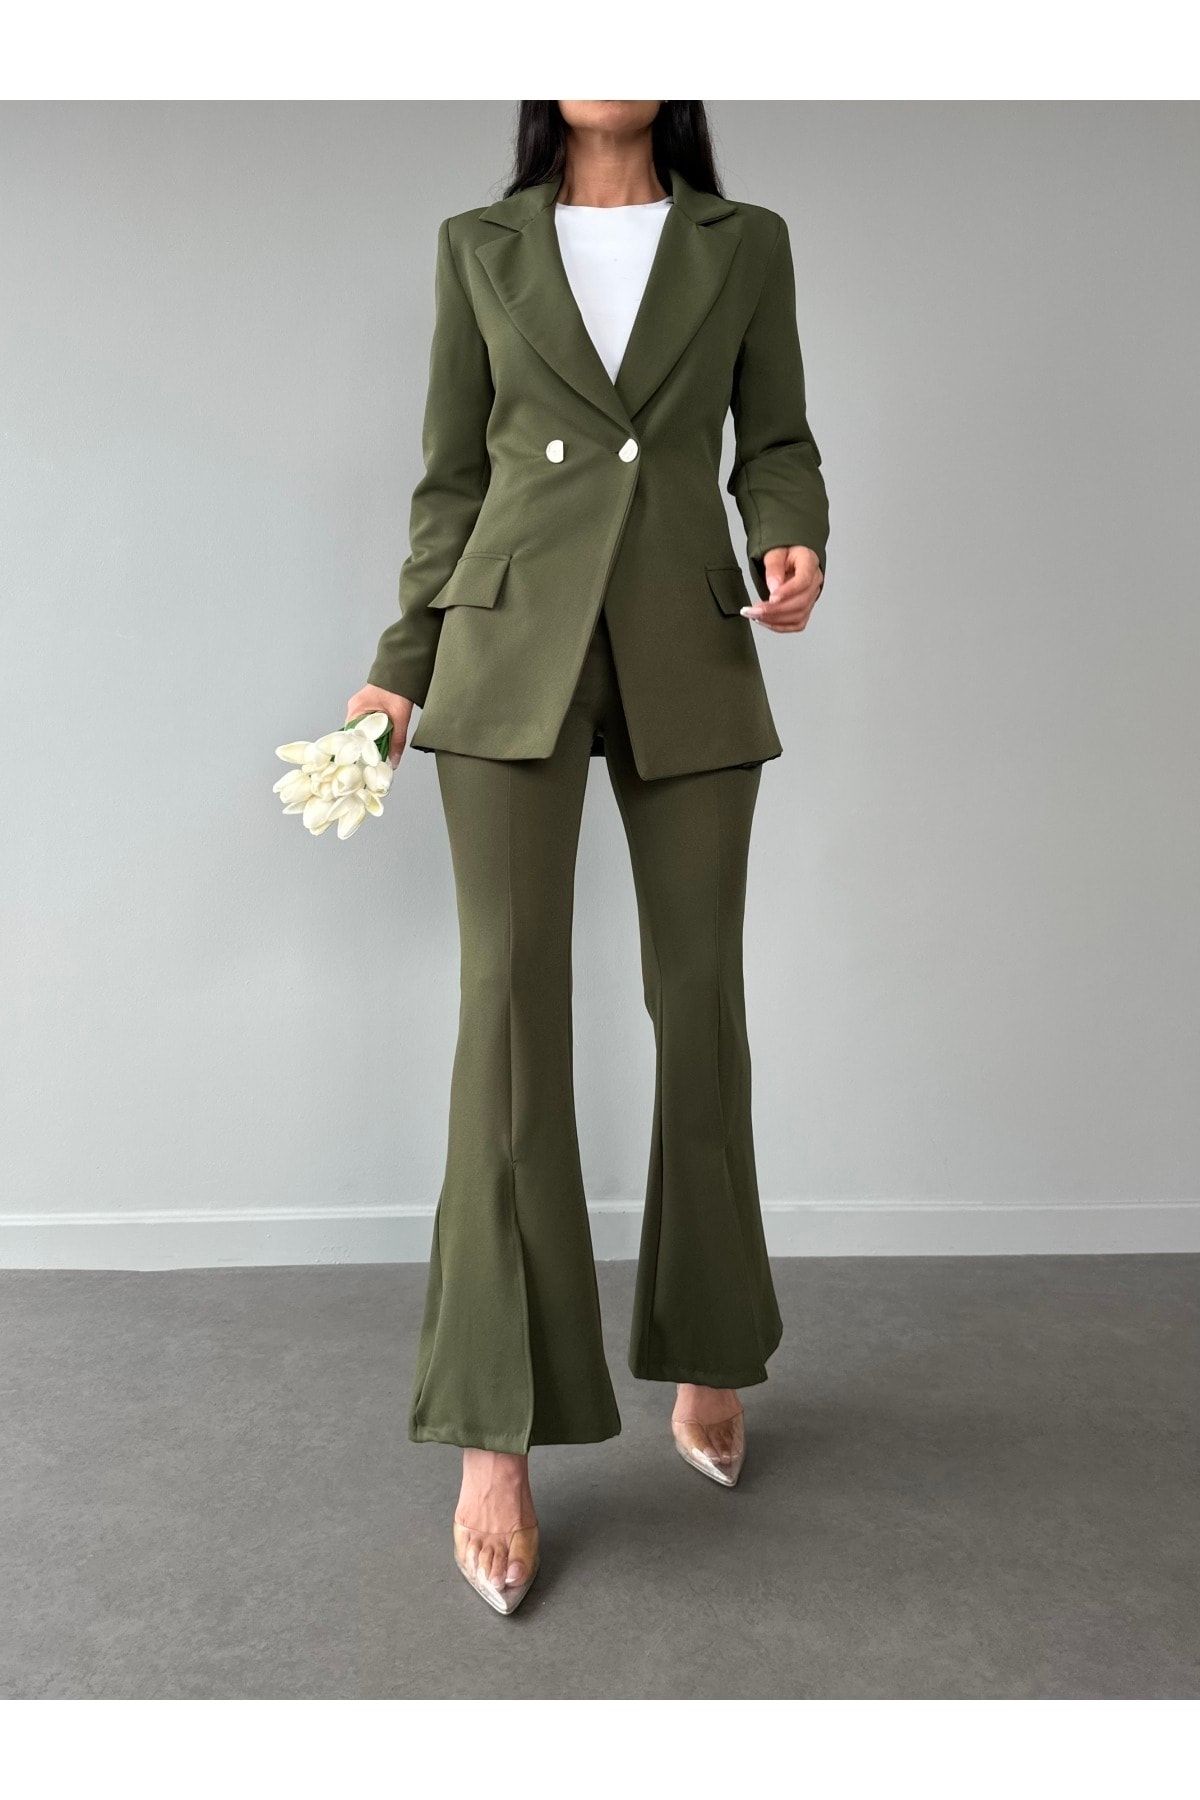 Rmz Style Haki Sahte Cep Tek Düğme Blazer Ceket Ispanyol Yırtmaçlı Paça Esnek Pantolon Takım Elbise